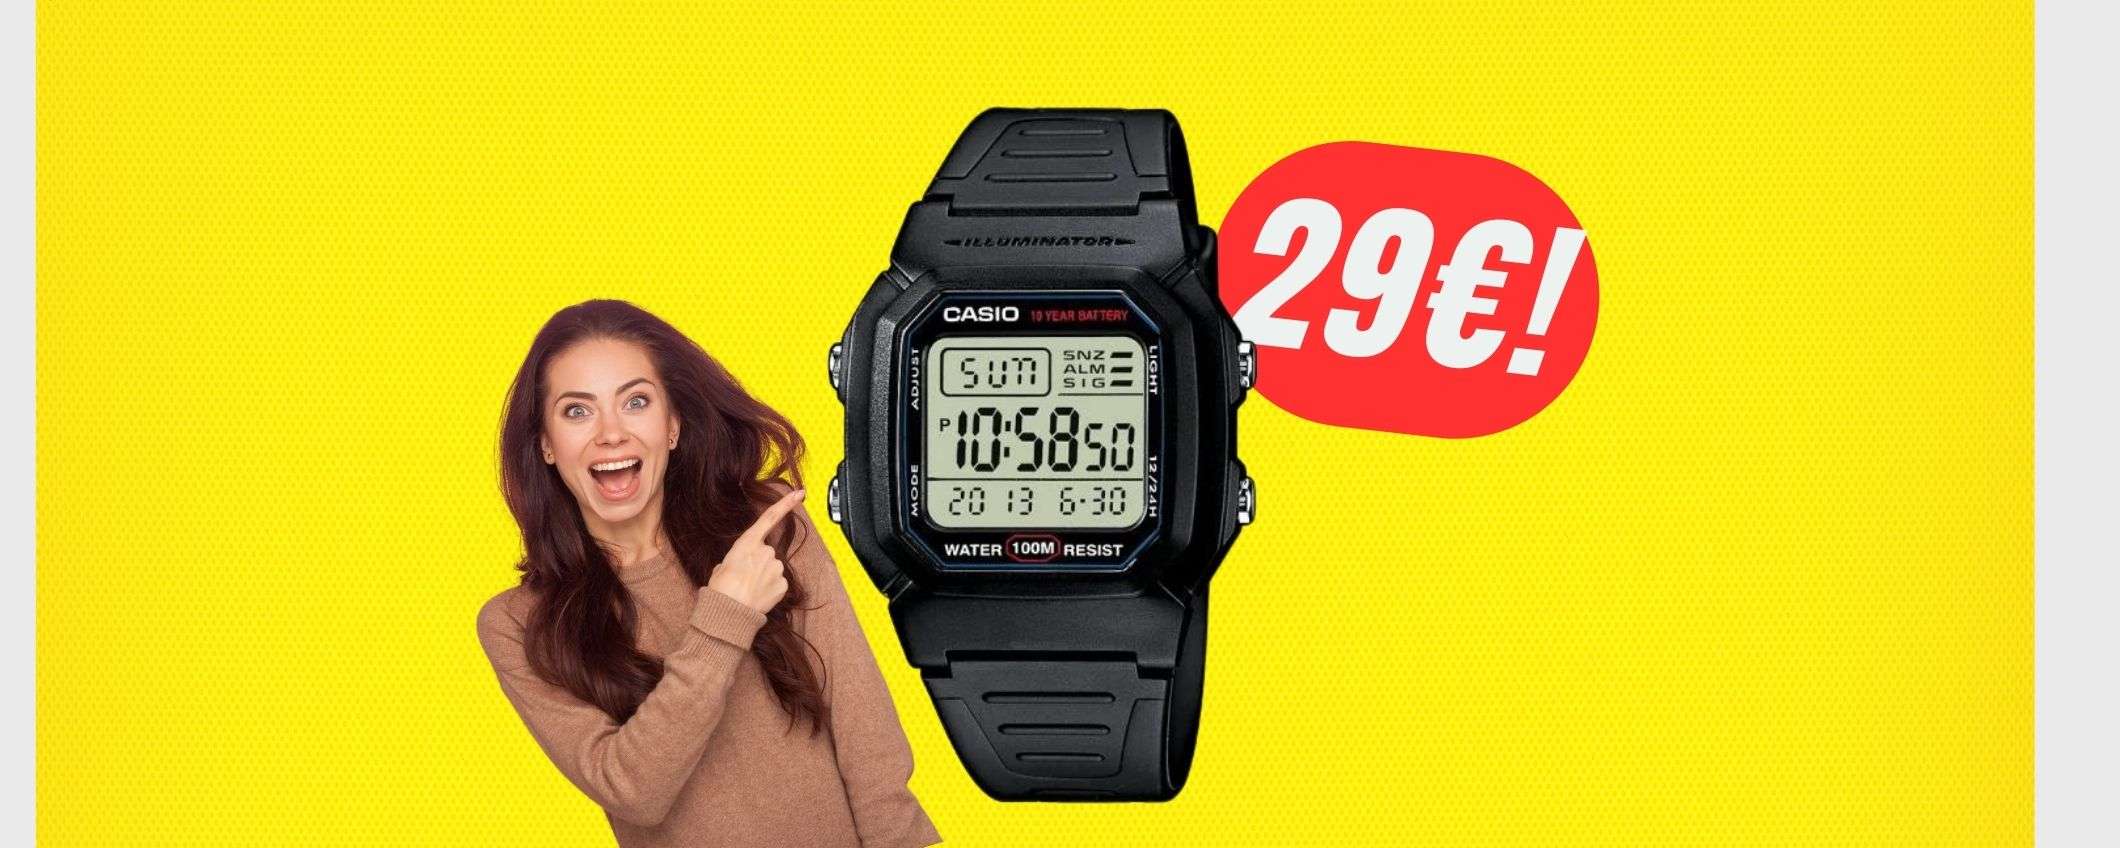 Migliora il tuo stile con l'iconico orologio CASIO a 29€!